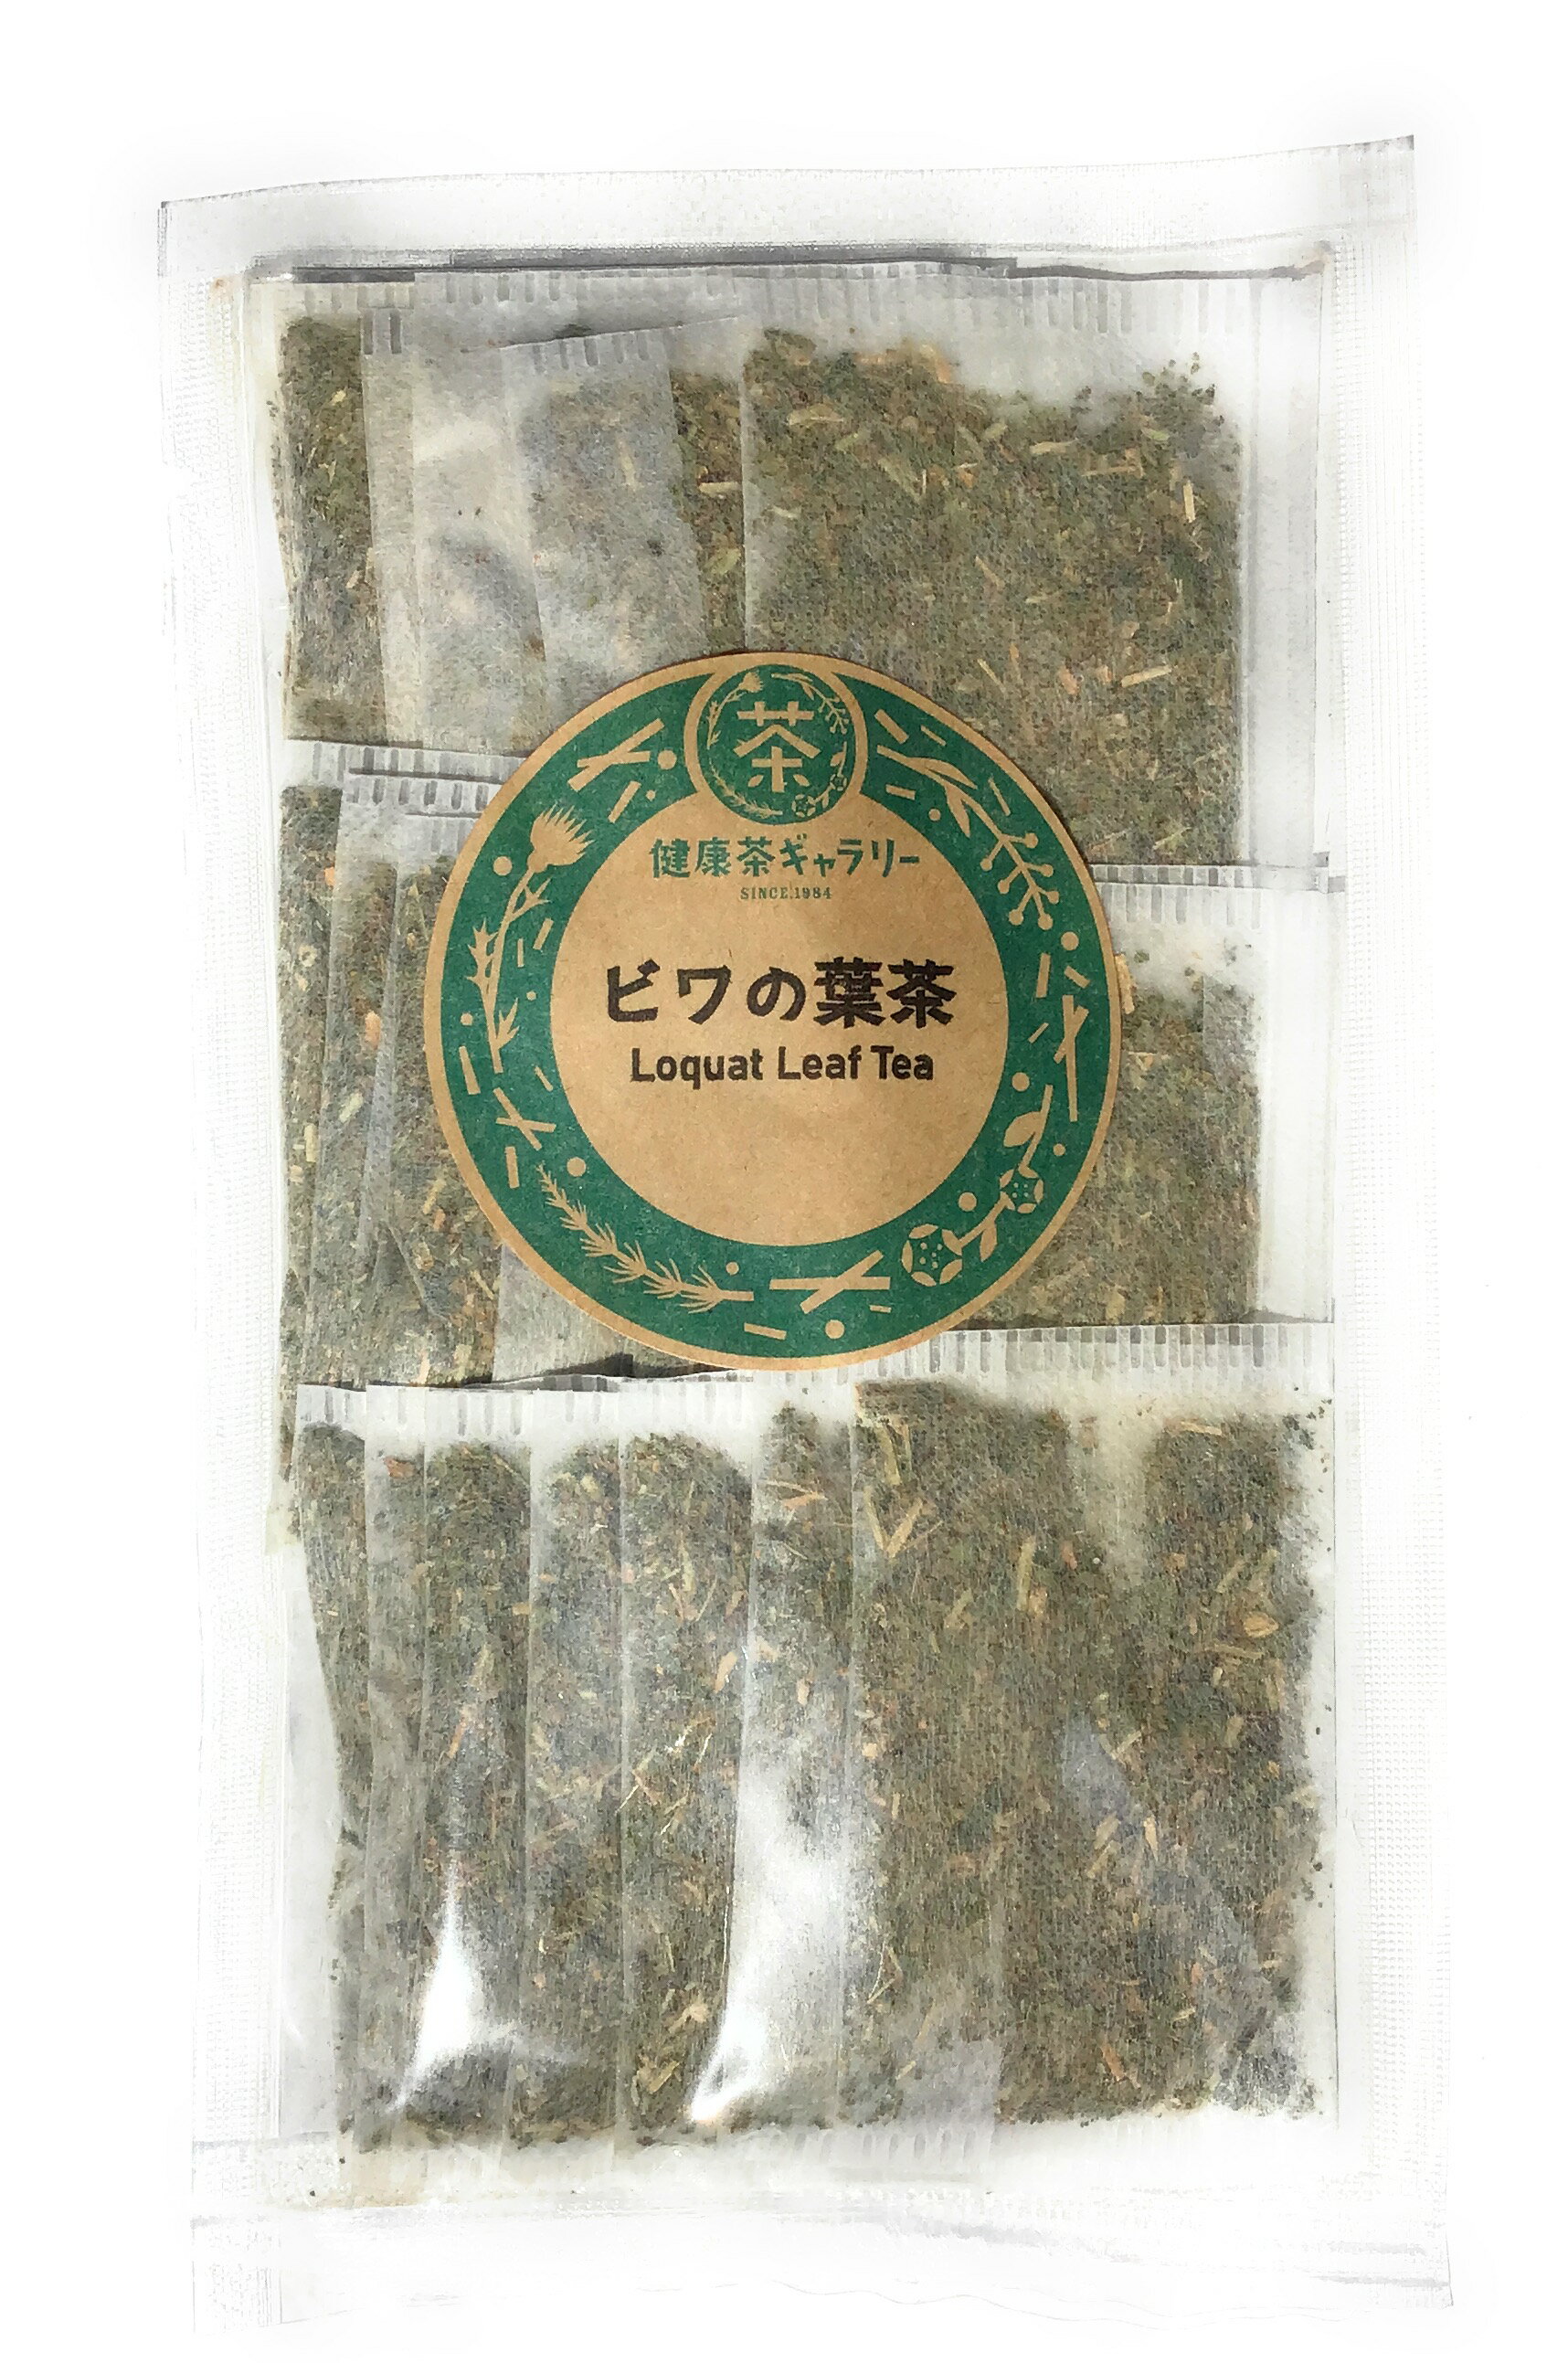 内 容 ビワの葉茶 20袋（3g×20） 保存方法 直射日光、高温多湿を避けて保存。 原材料 ビワの葉・枝 原産国 日本 賞味期限 1年以上 広告文責 健康茶ギャラリー 0172-35-8458 メーカー（製造） 健康茶ギャラリー 区分 日本製・健康茶ビワの葉茶 ( 枇杷の葉茶 ) Loquat Leaf Tea バラ科枇杷(ビワ)の葉のお茶。 古くより、暑さ対策や活力を養うために 利用されてきた伝統茶のひとつです。 余分な熱を清め、潤すので、幅広い健康維持に用いられています。 生活習慣の乱れ、多忙やストレスに悩む方、 乾燥や環境に敏感な方の健康力を培います。 また、化粧水やお風呂へのご利用もおすすめです。 ※ノンカフェイン　 ※本品製造工場では「大豆」を含む製品を製造しております。